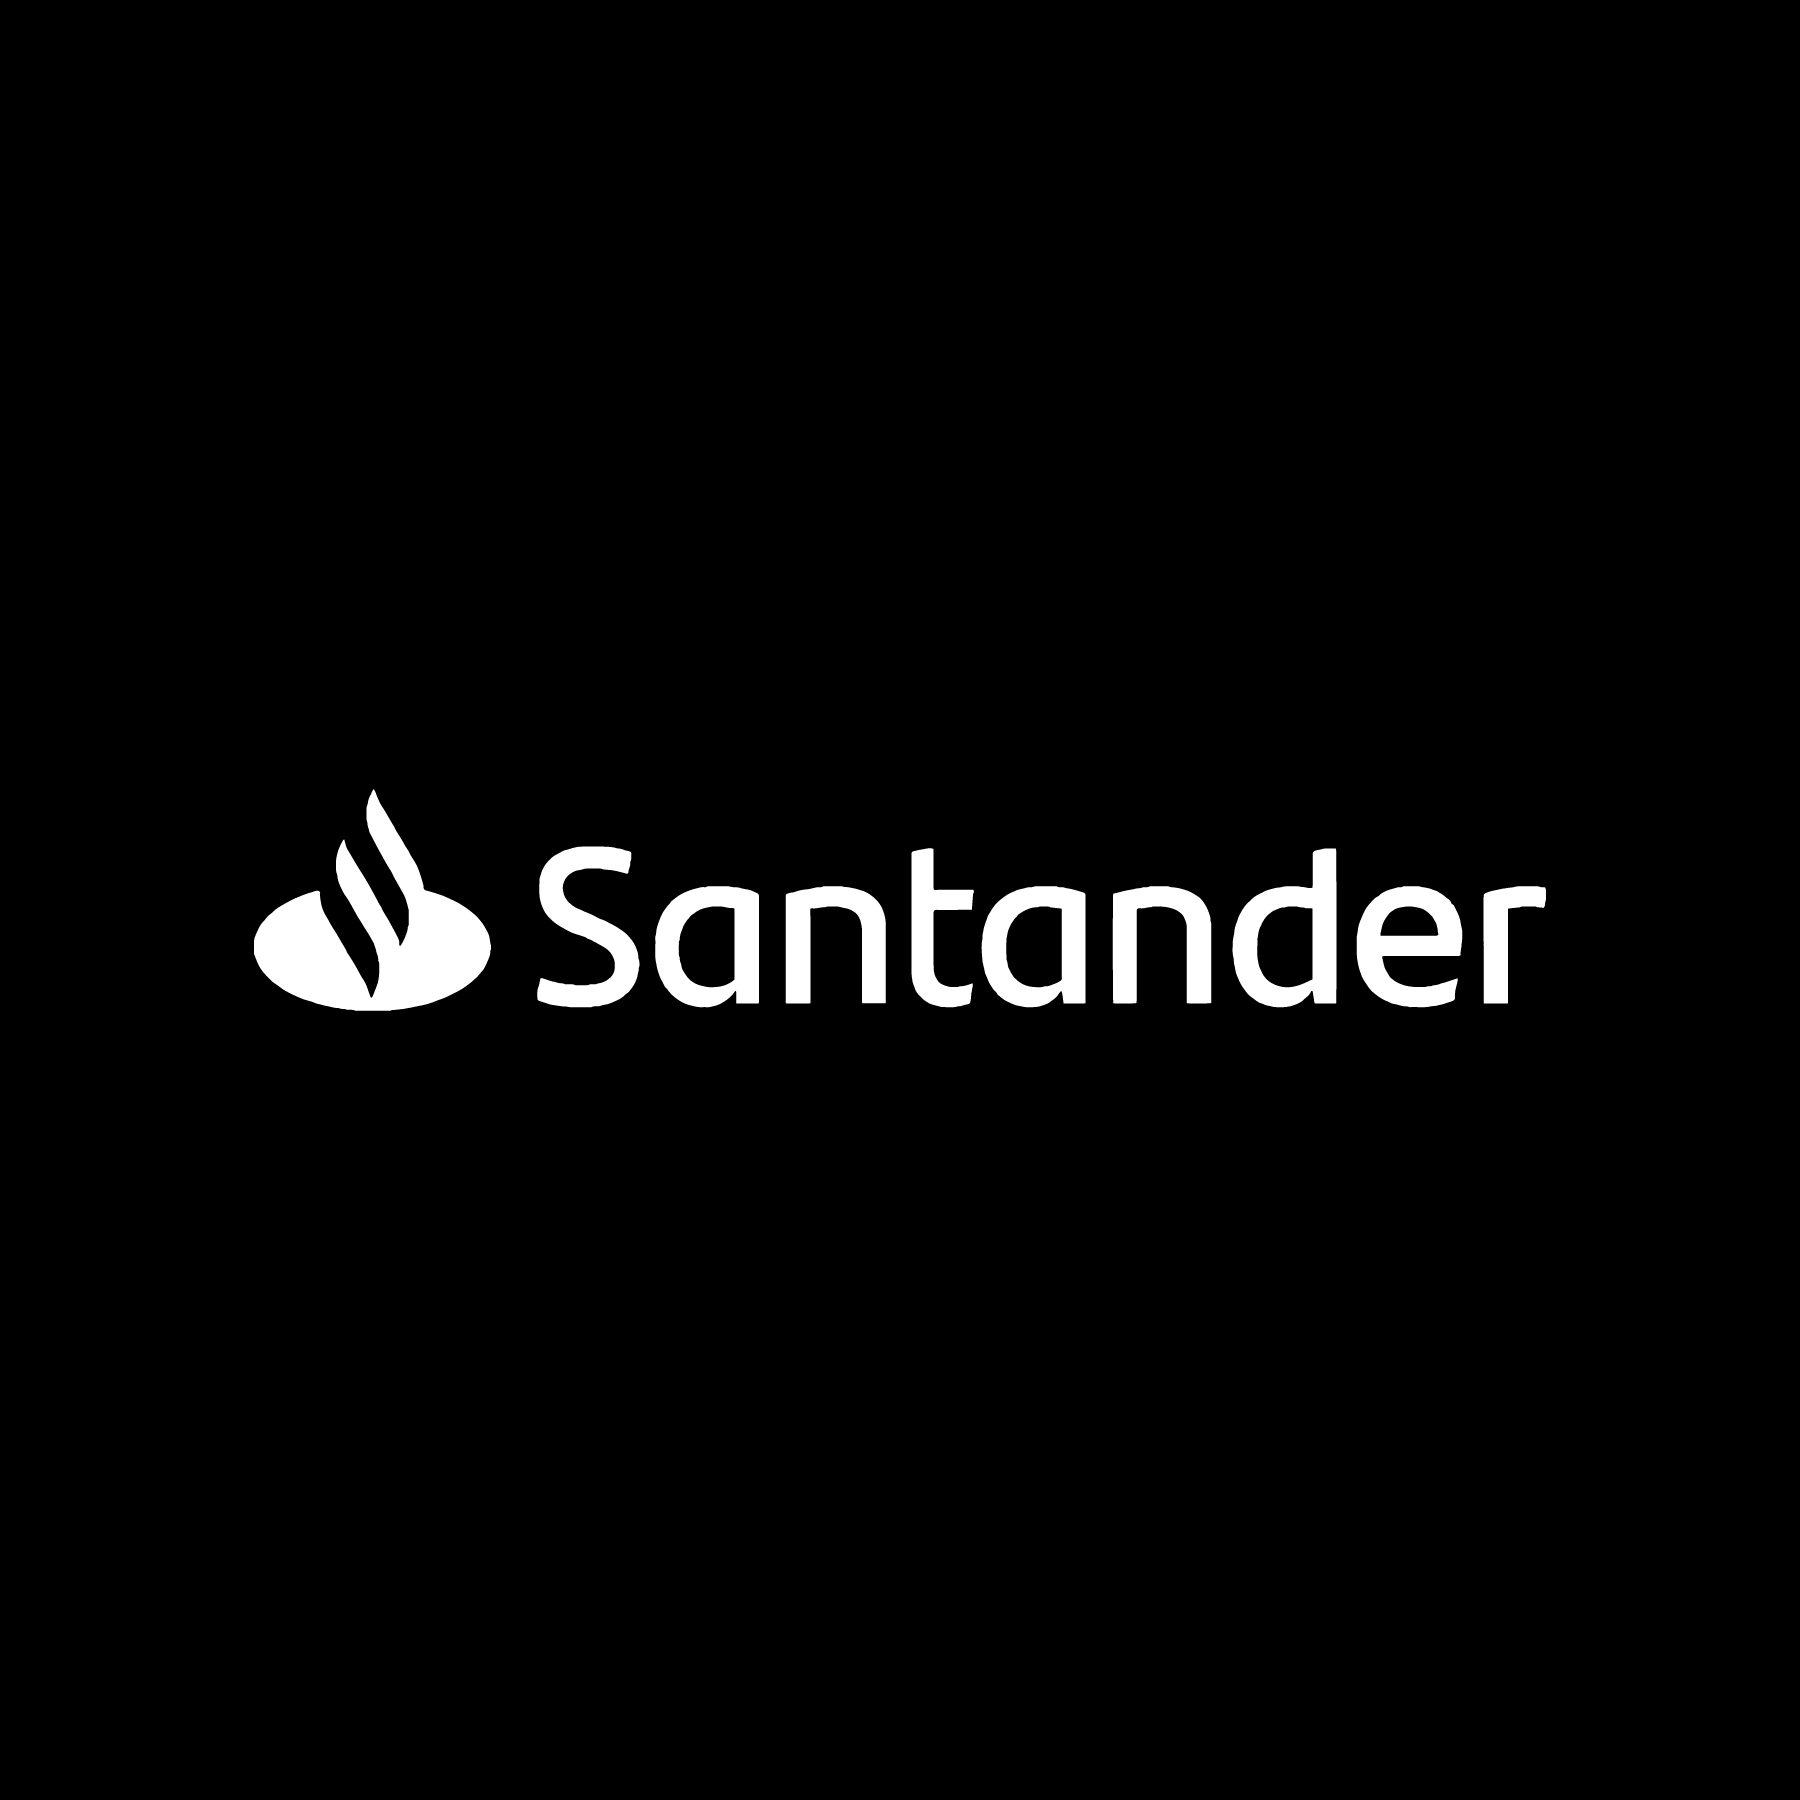 Santander B&W.png